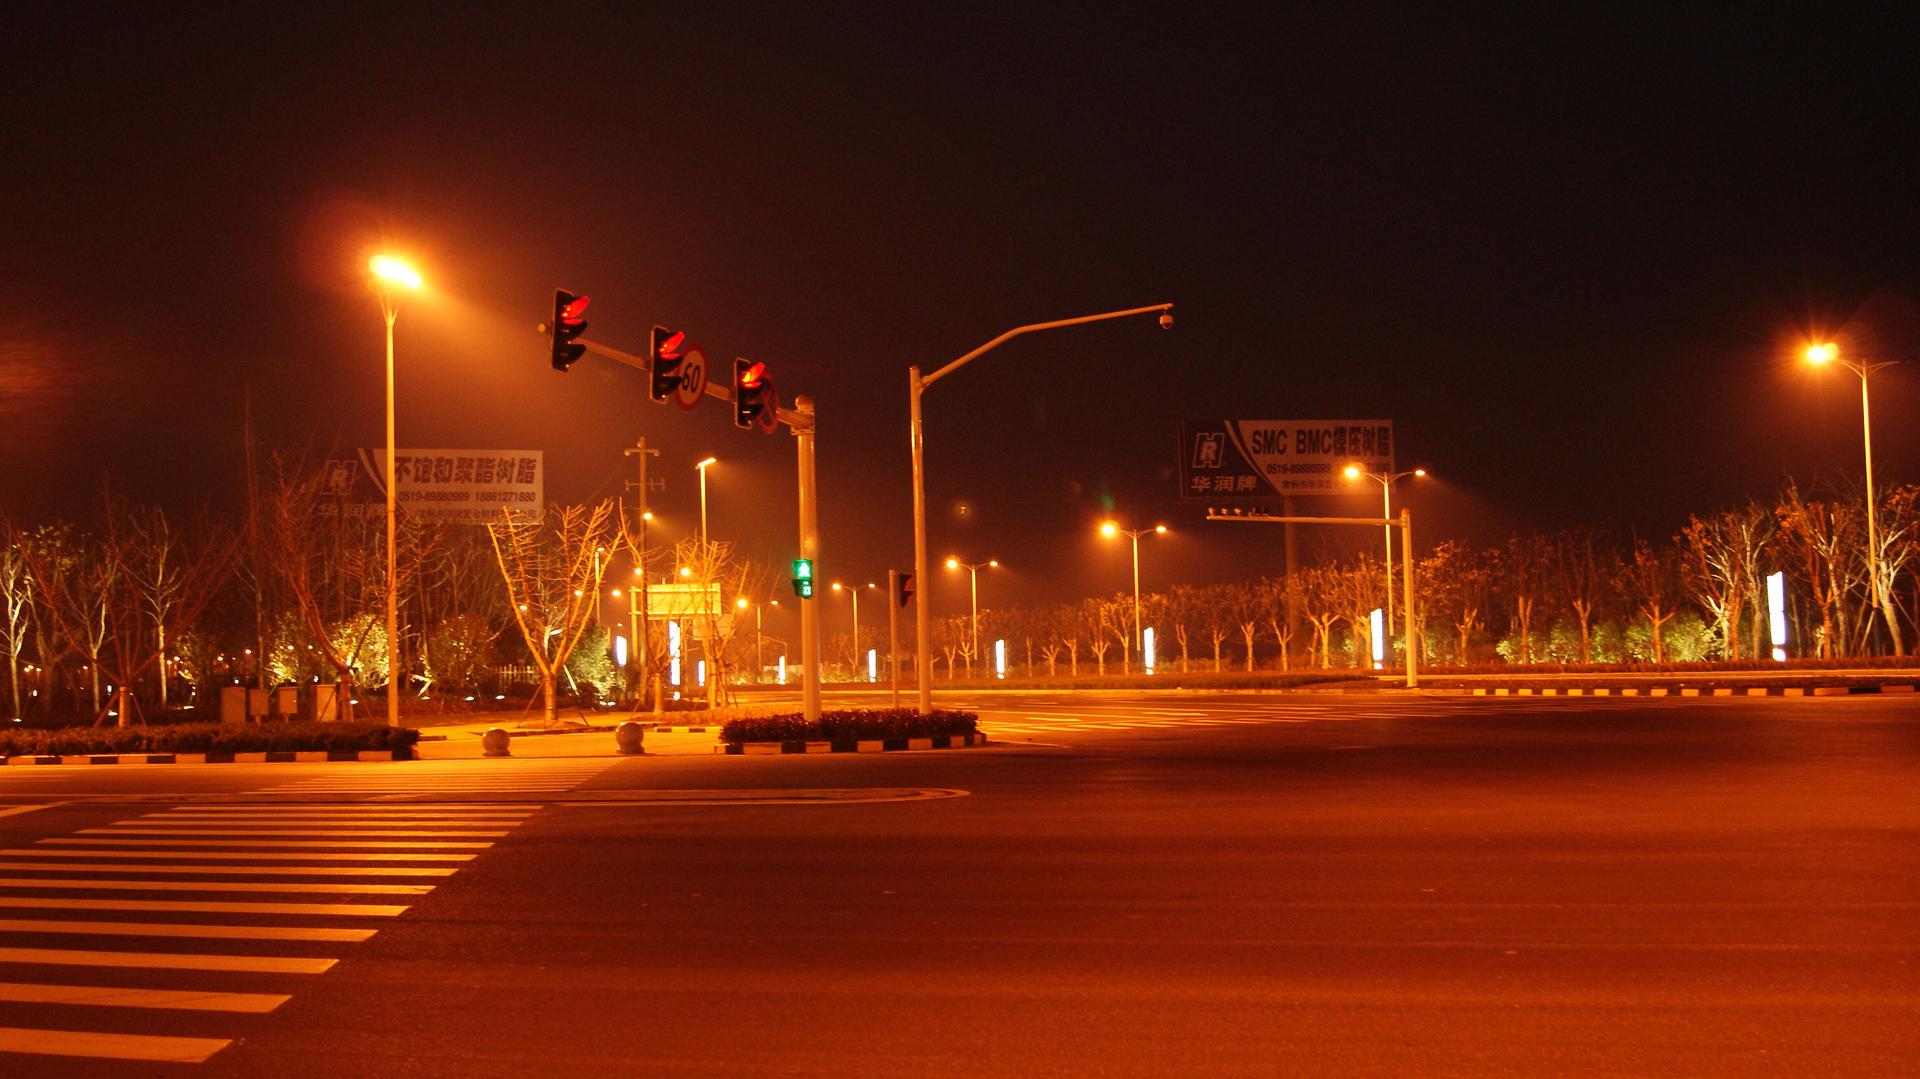 量多力量大,以量多取胜,哈哈——夜景机场马路.多谢